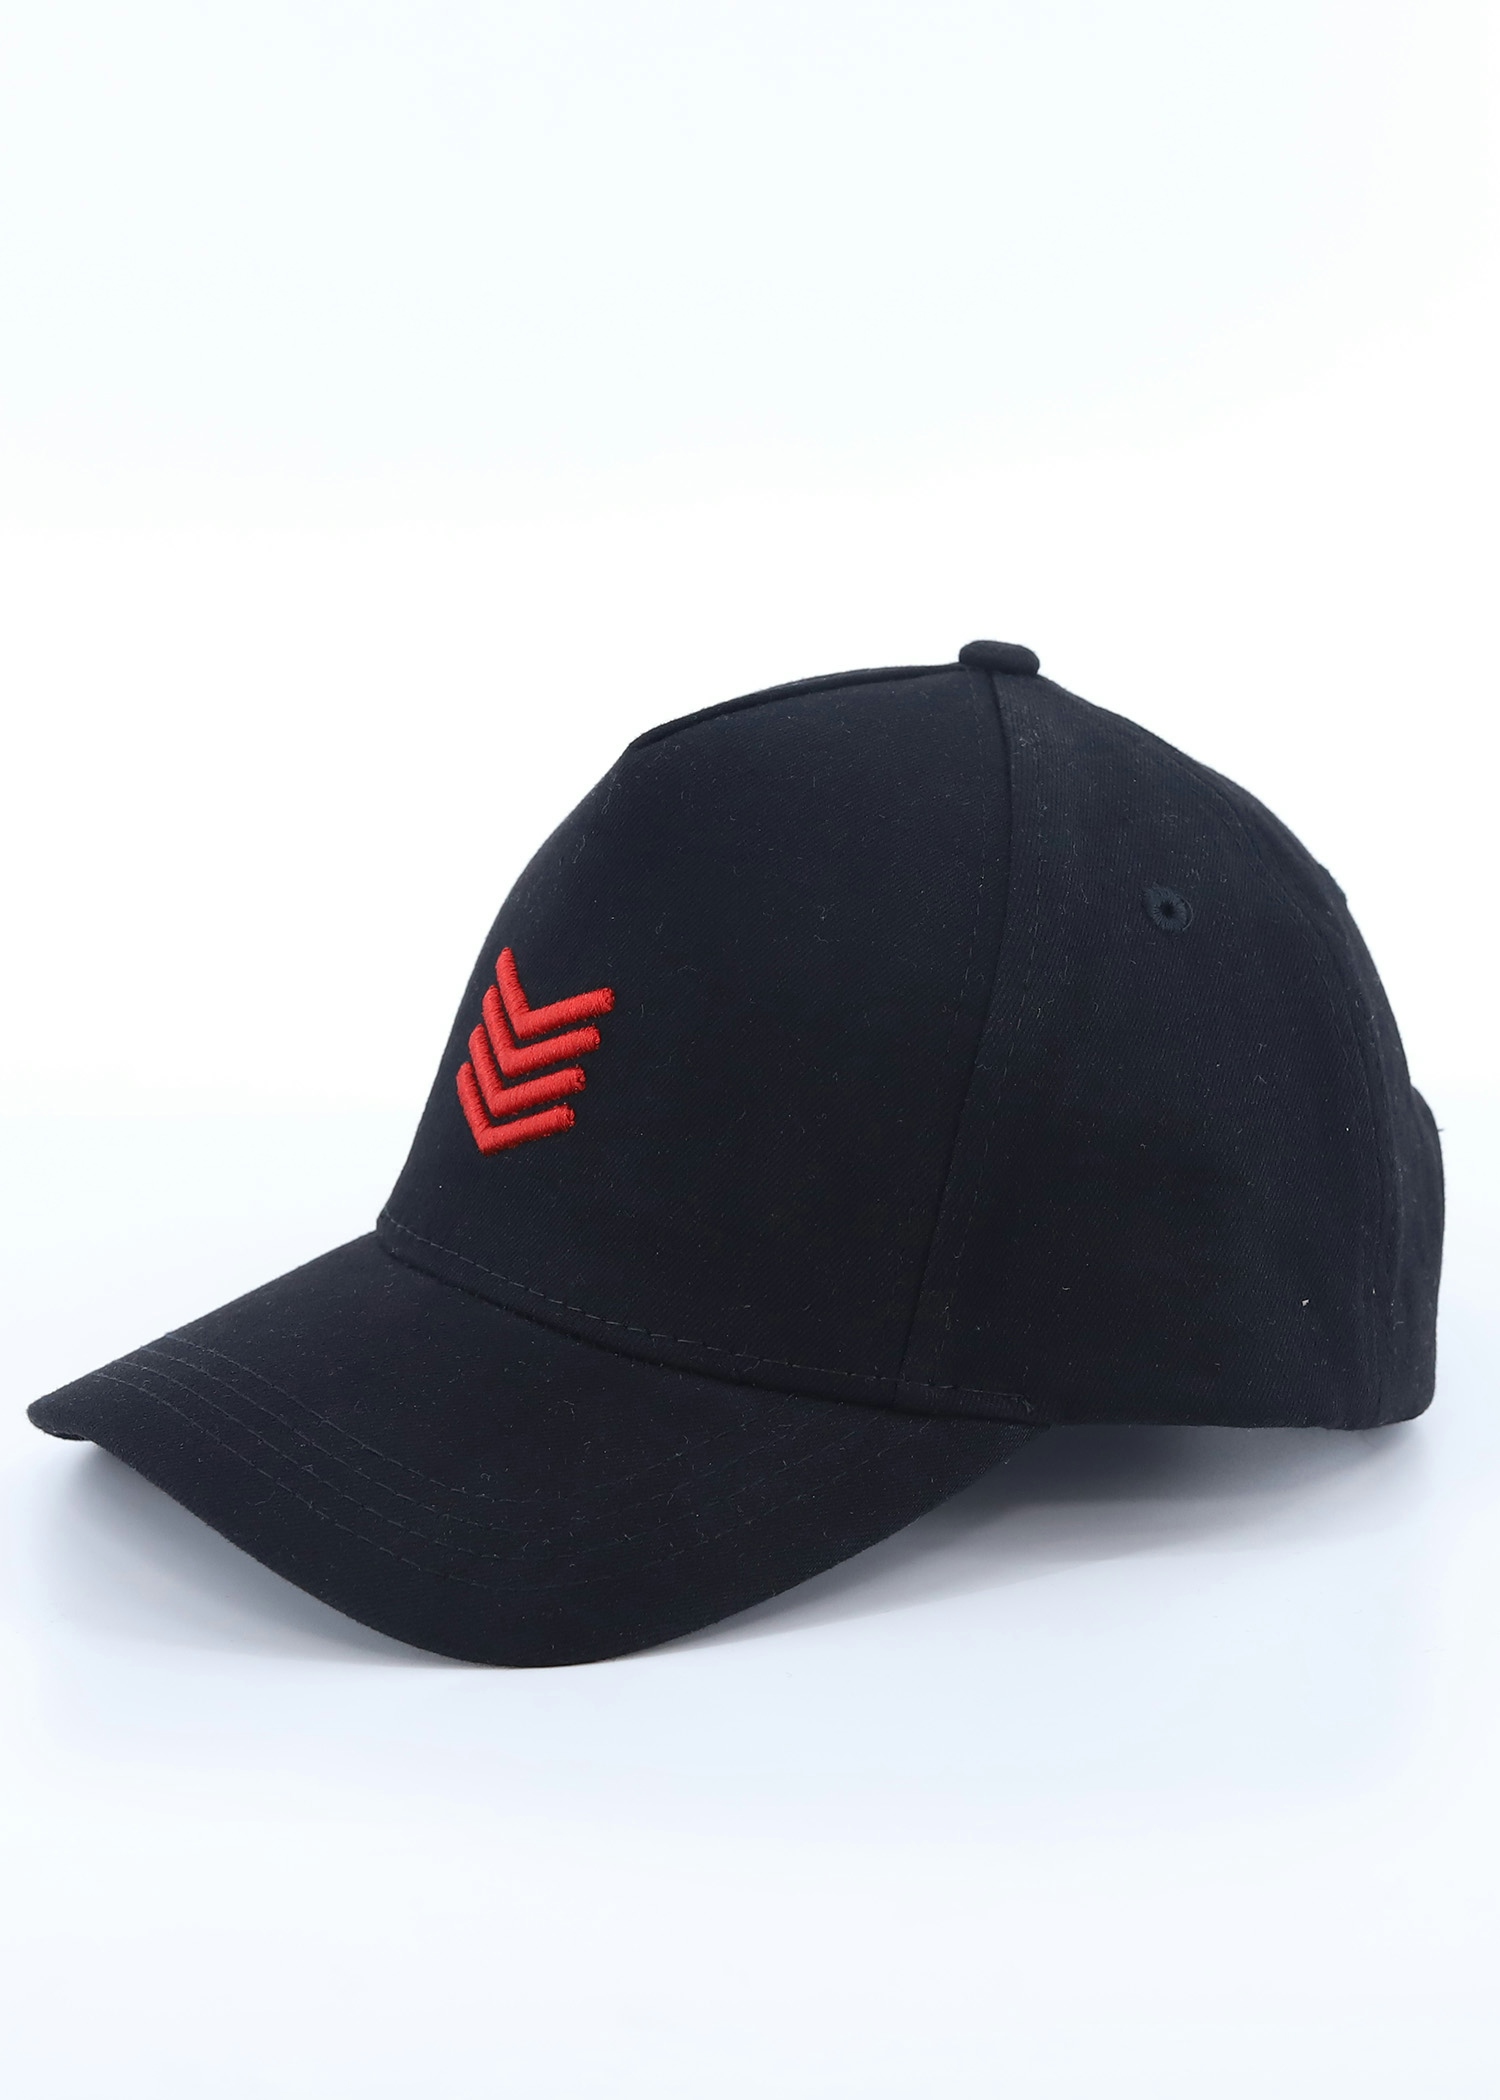 rooster visor cap black color option